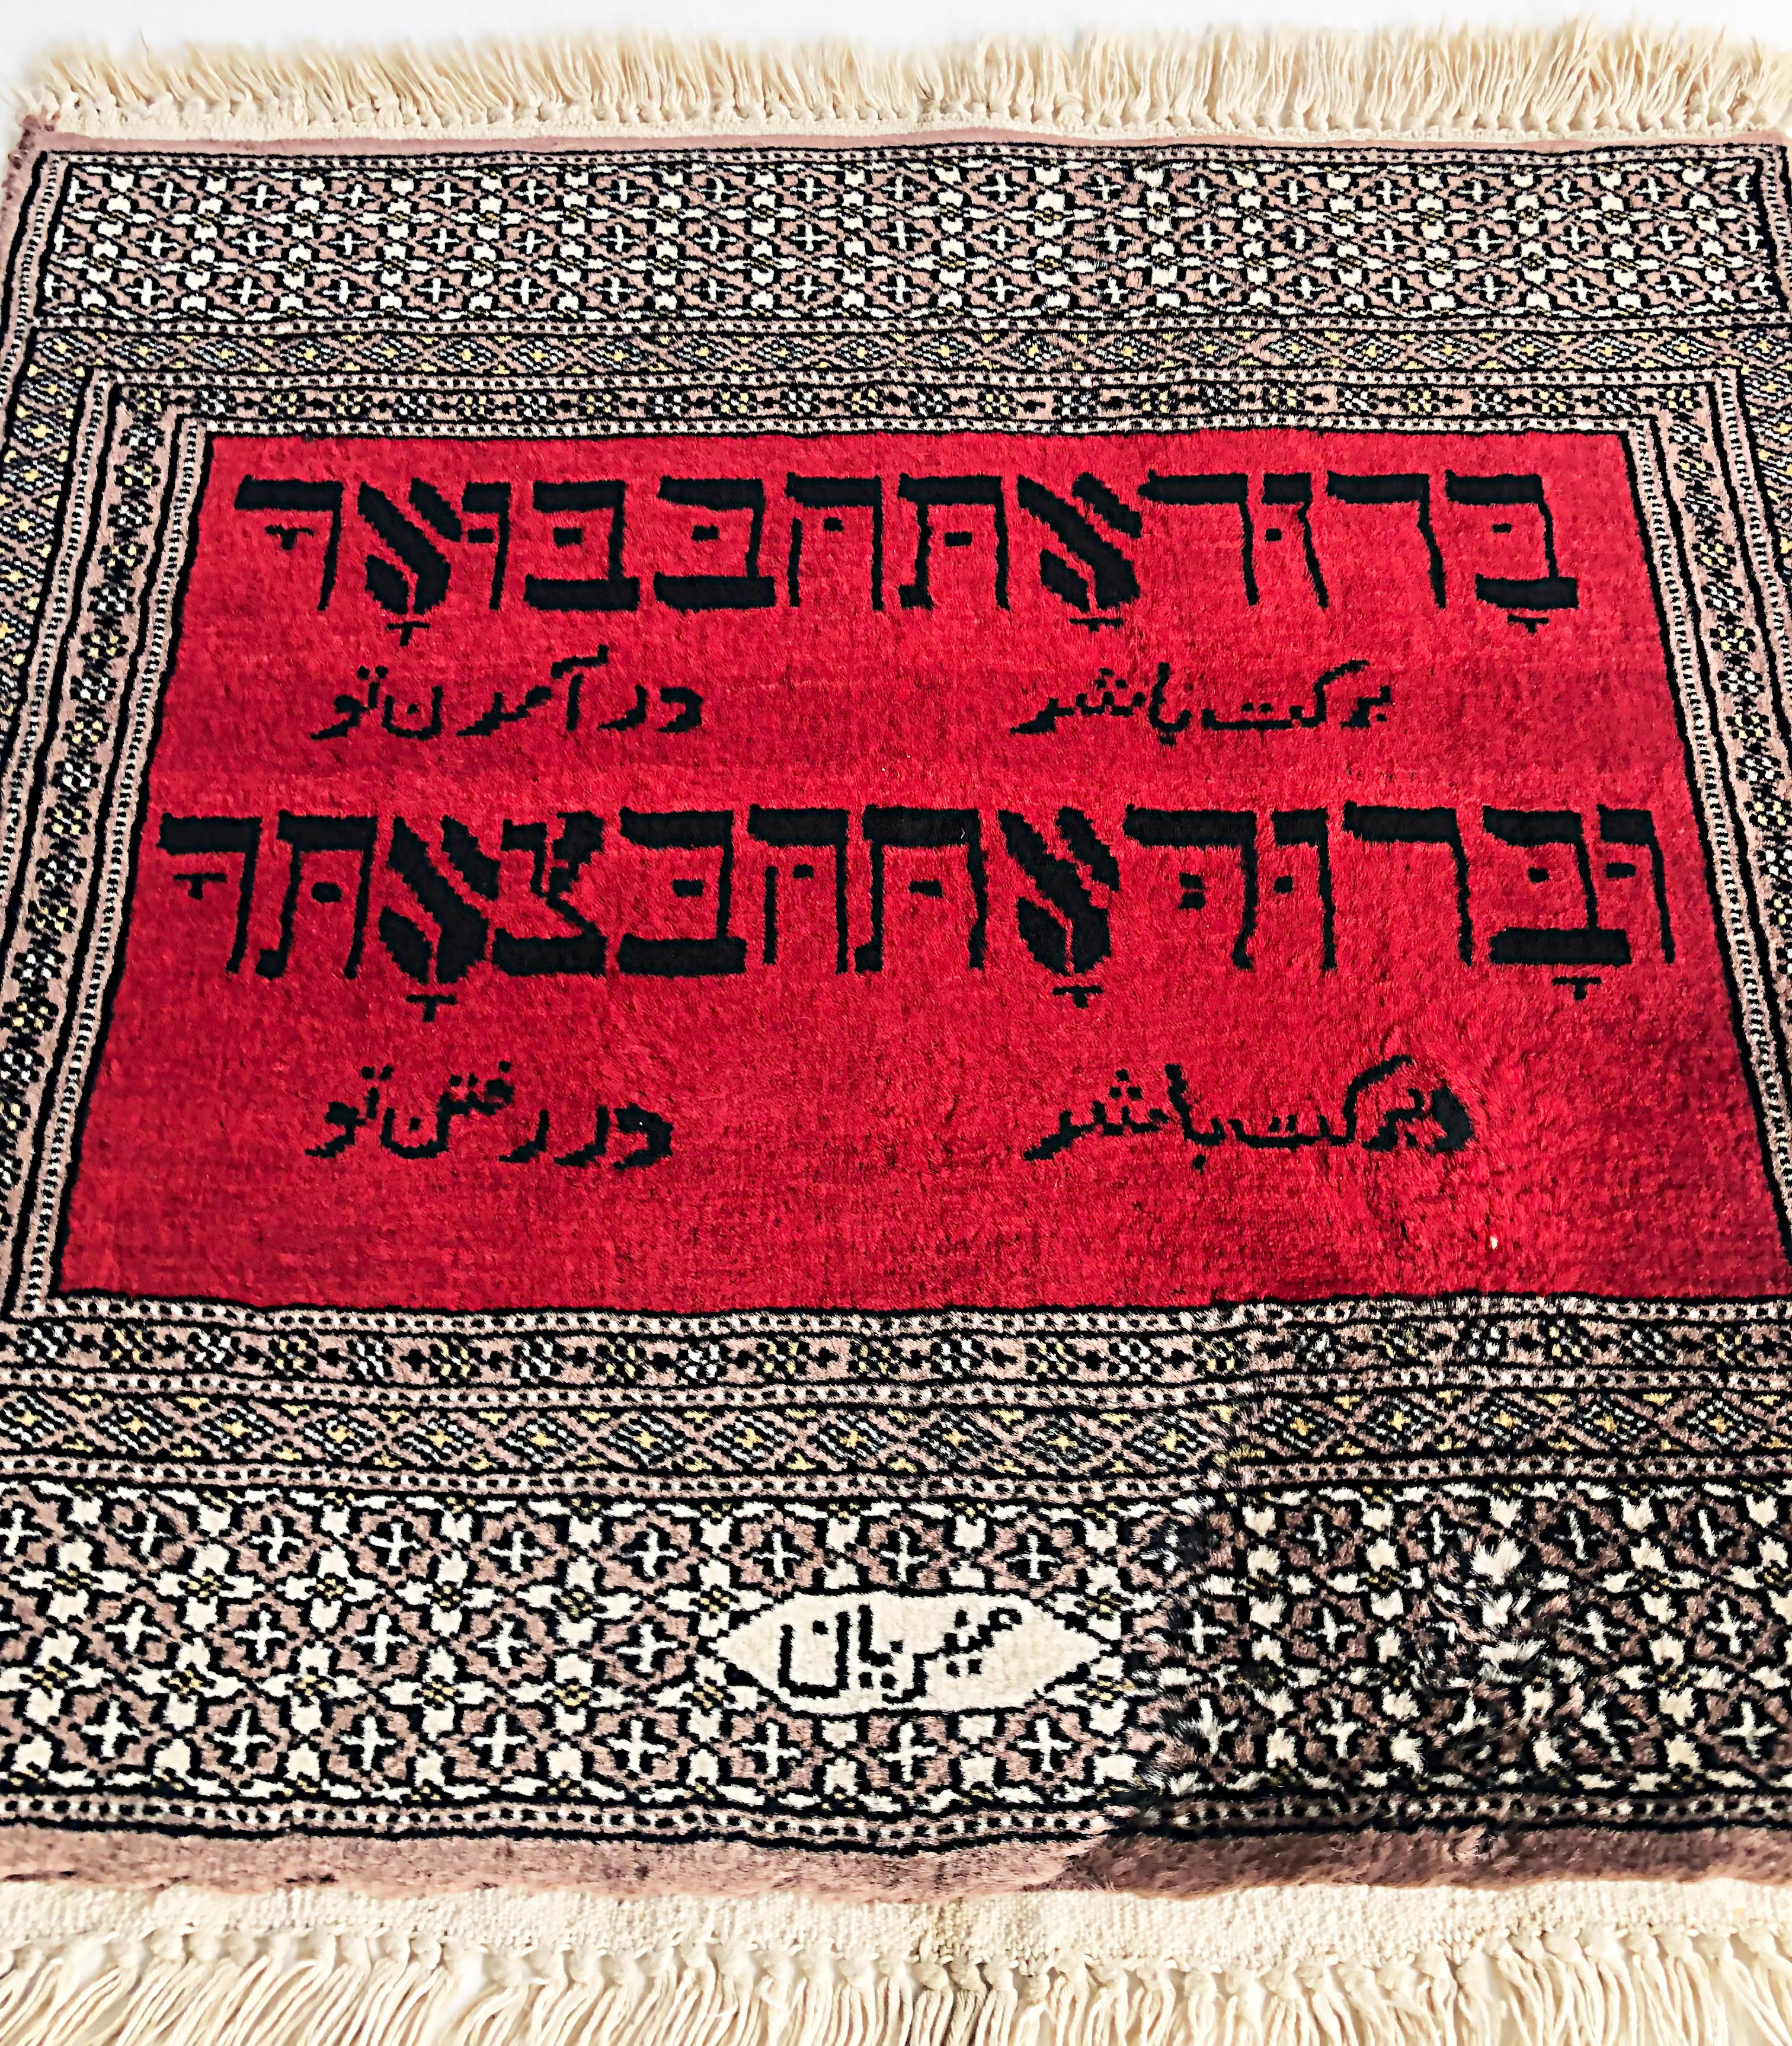 Petit tapis de prière en laine avec texte hébreu, signé.

Nous proposons à la vente un tapis de prière tissé présentant un texte hébreu en deux lignes sur un fond rouge encadré par des bordures florales et géométriques.  Le texte hébreu se traduit